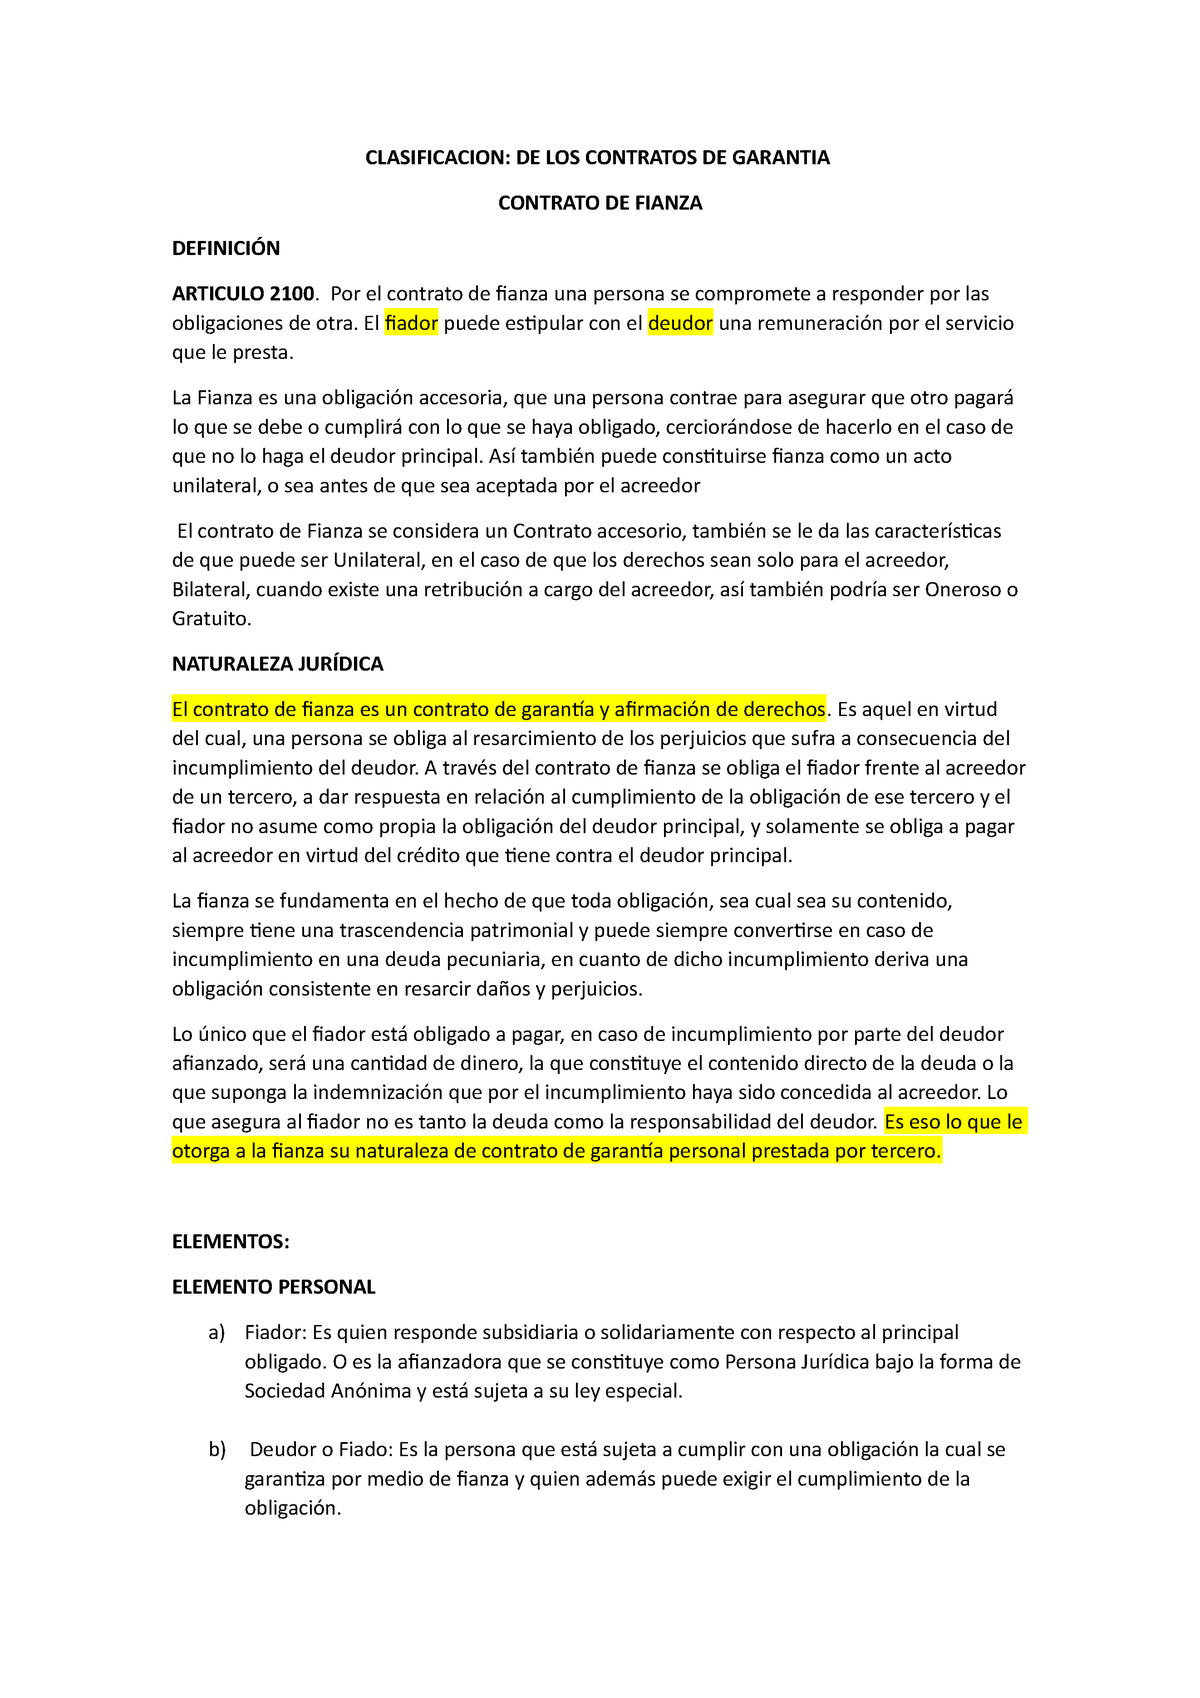 Contrato De Fianza Resumen Clasificacion De Los Contratos De Garantia Contrato De Fianza 8227